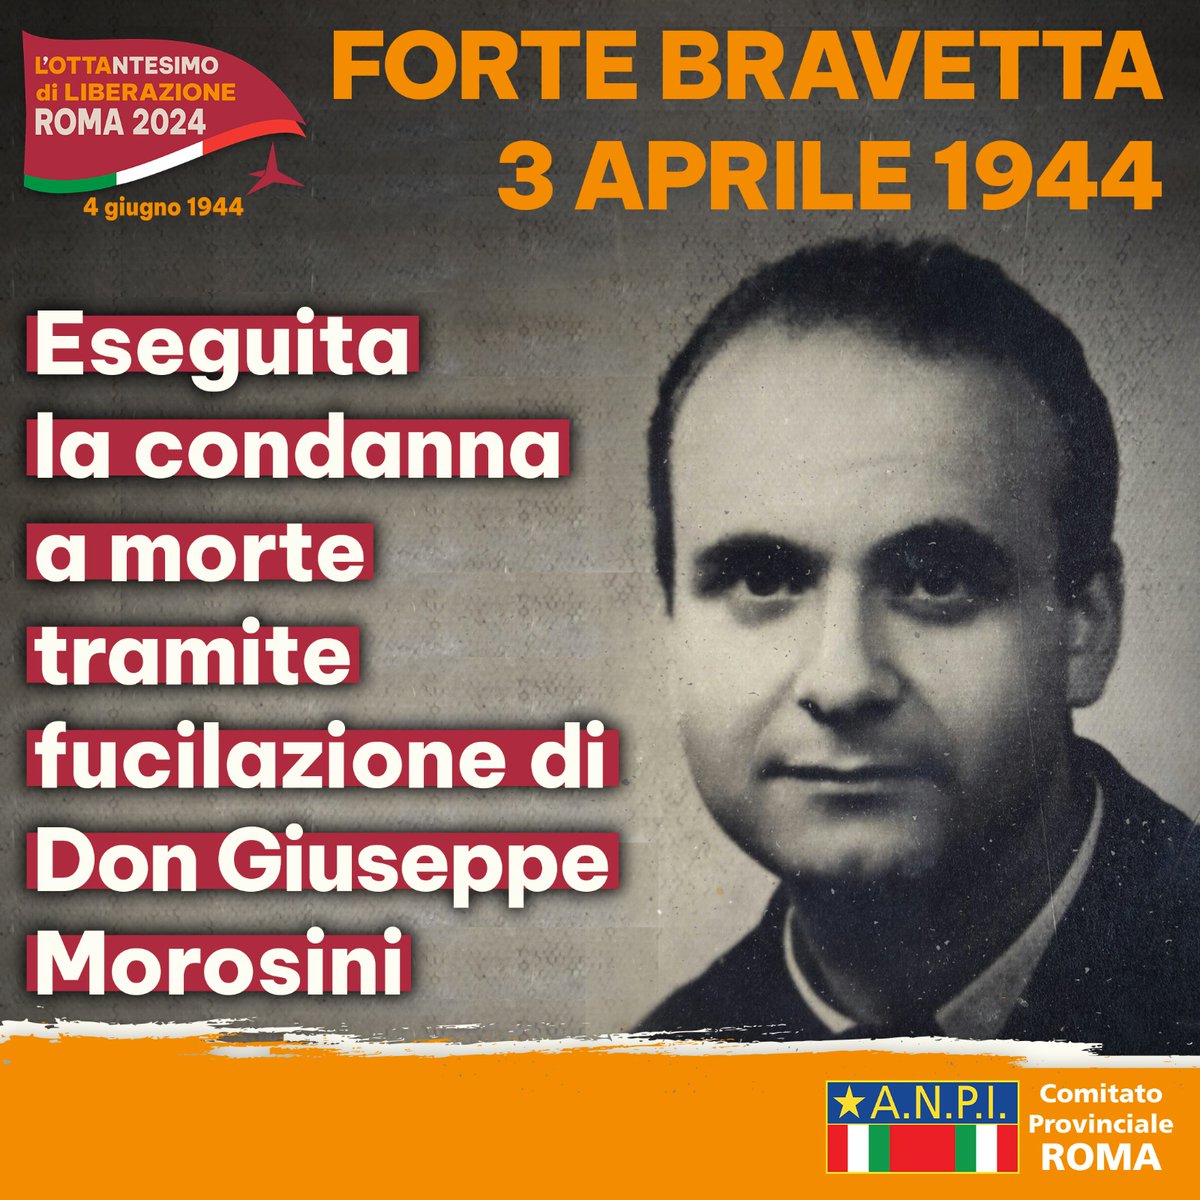 3 aprile 1944: don Giuseppe Morosini è fucilato a Forte Bravetta.
#memoria #Resistenza #maipiùfascismi